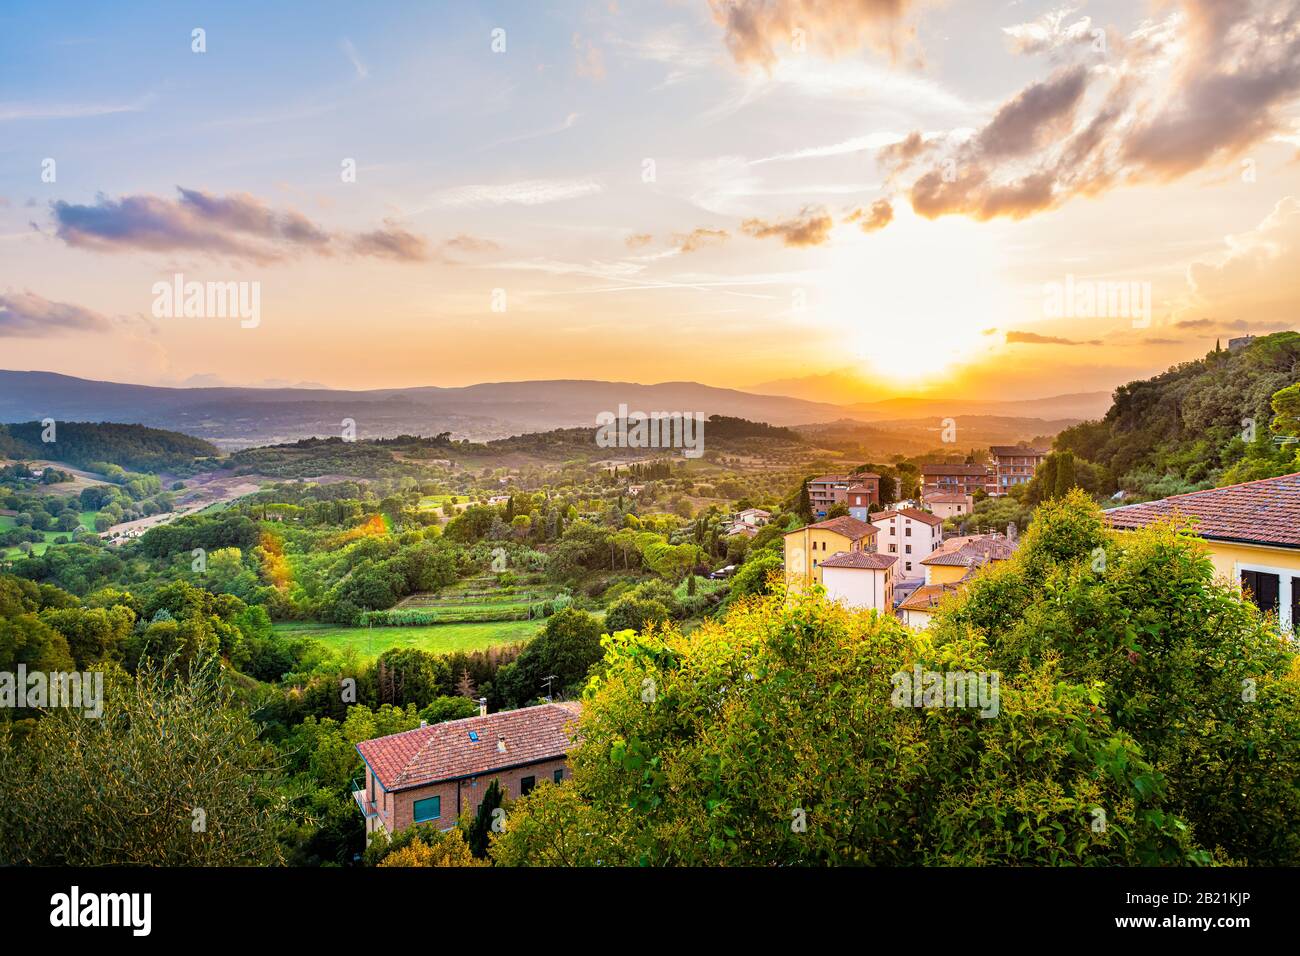 Farbenfroher Abenduntergang in der kleinen Stadt Chiusi, Toskana Italien mit Häusern Dach Dächer auf der Bergwelt rollende Hügellandschaft Landschaft und malerisch Stockfoto